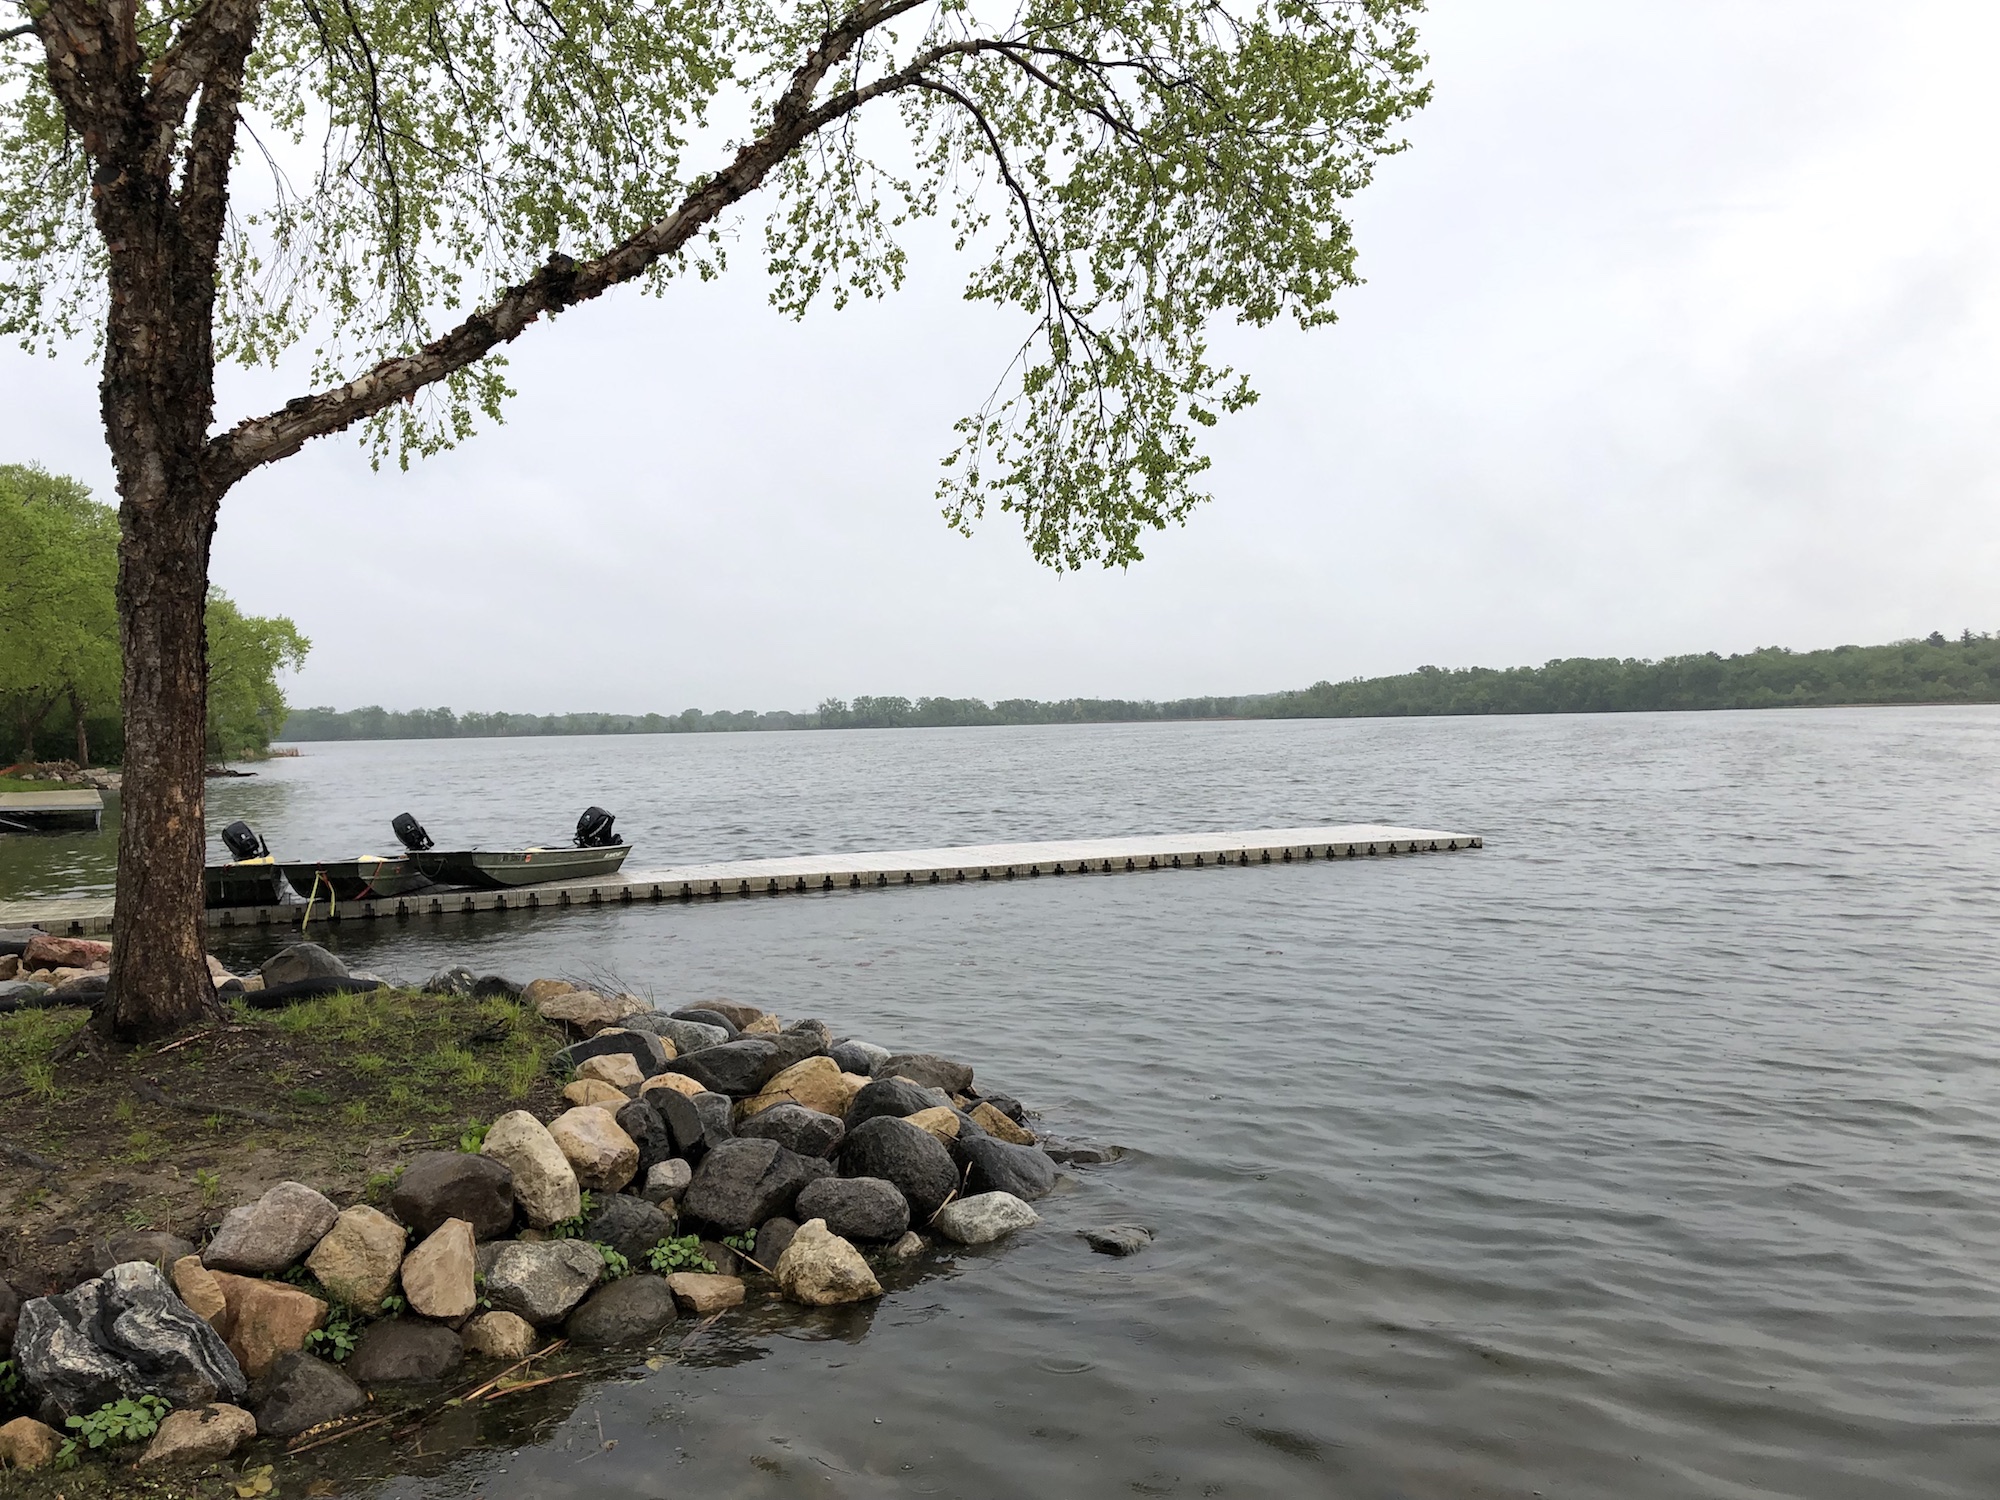 Lake Wingra on May 24, 2019.